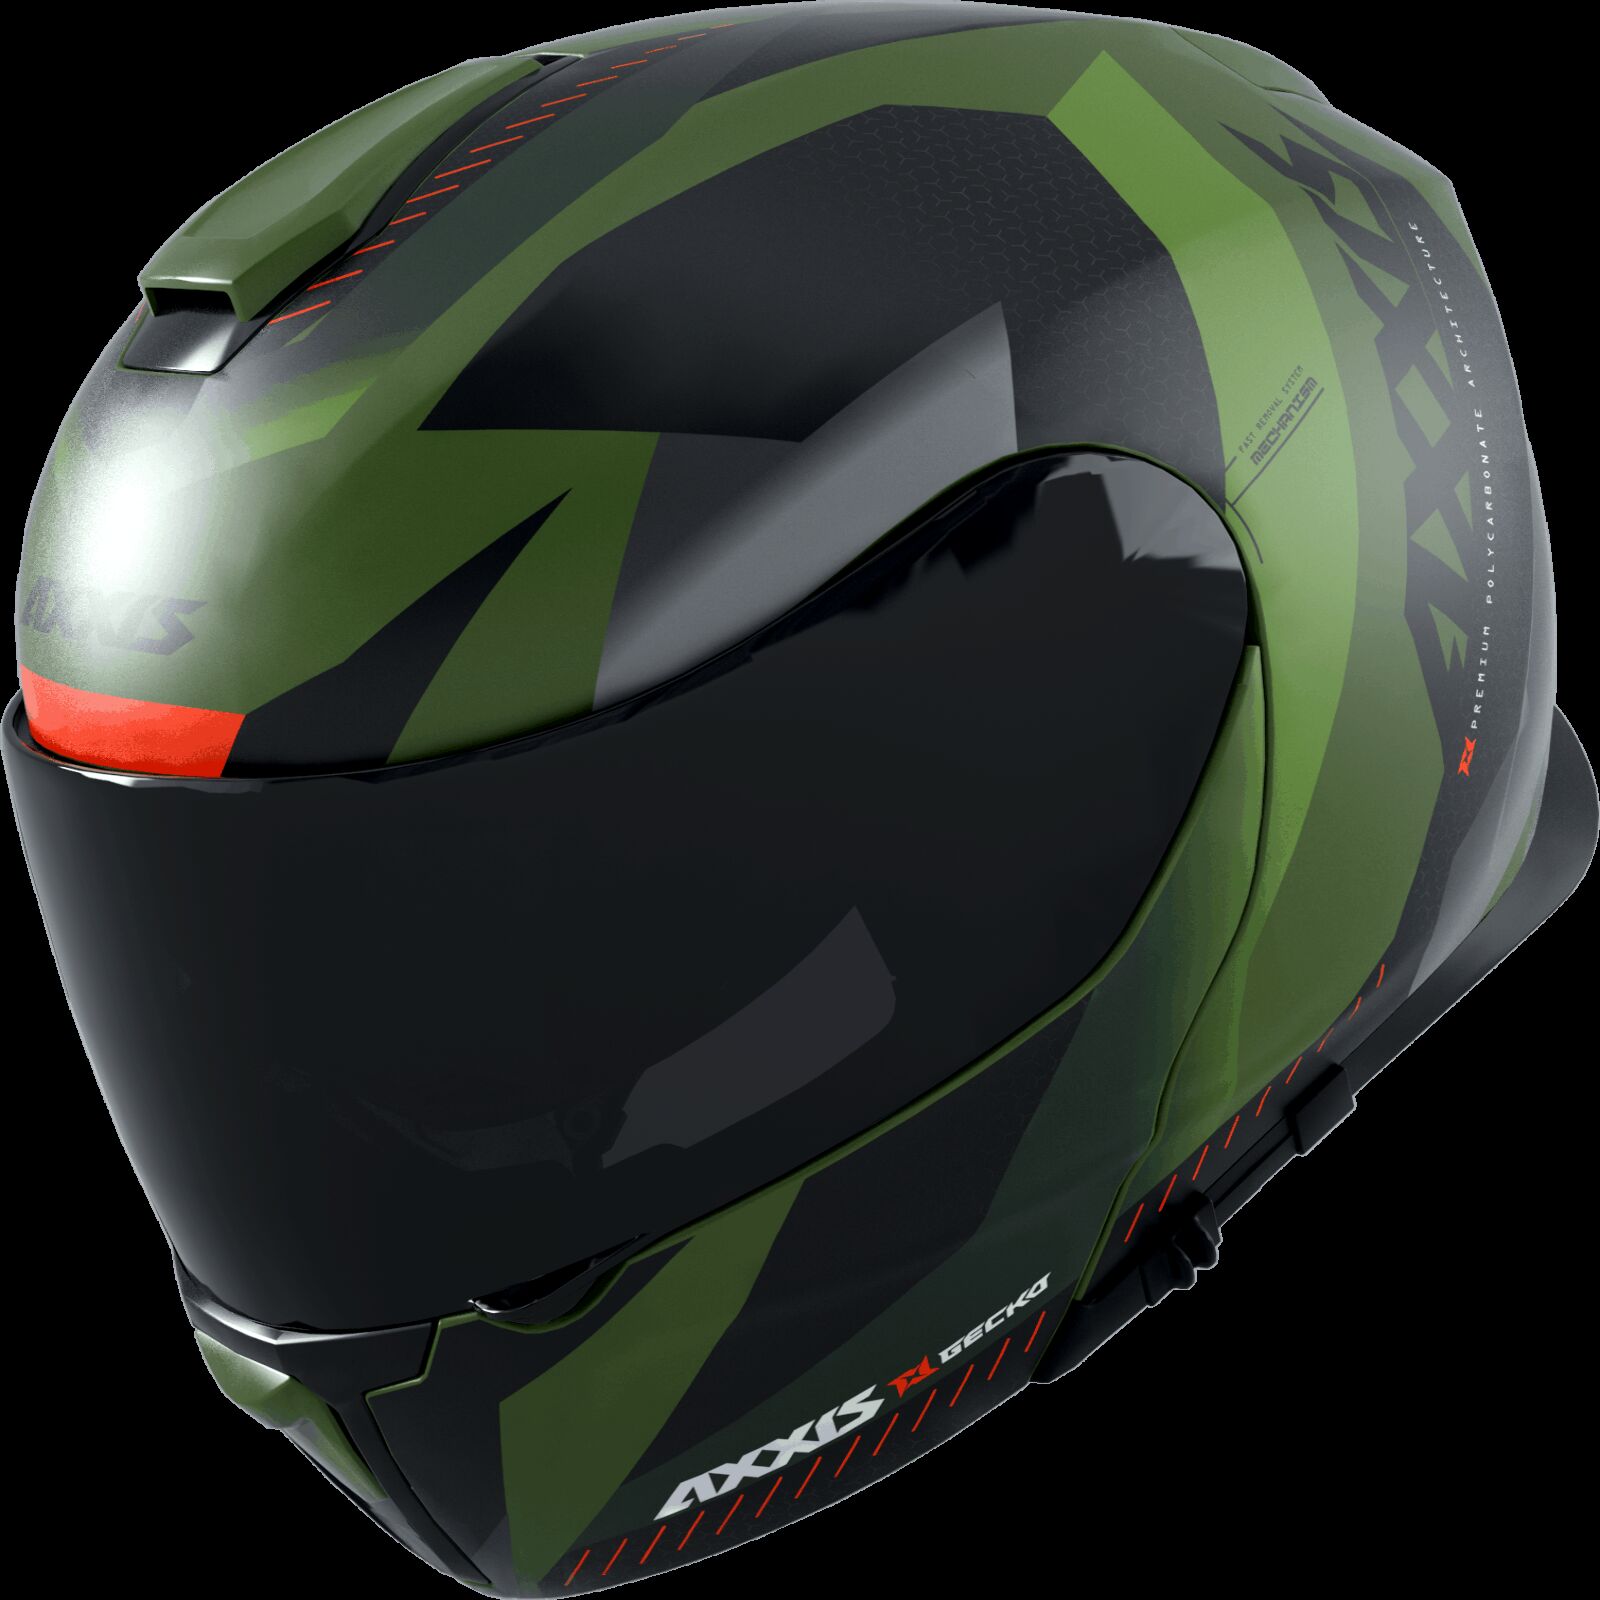 Obrázek produktu Výklopná helma AXXIS GECKO SV ABS shield f6 matná zelená S 42621075634